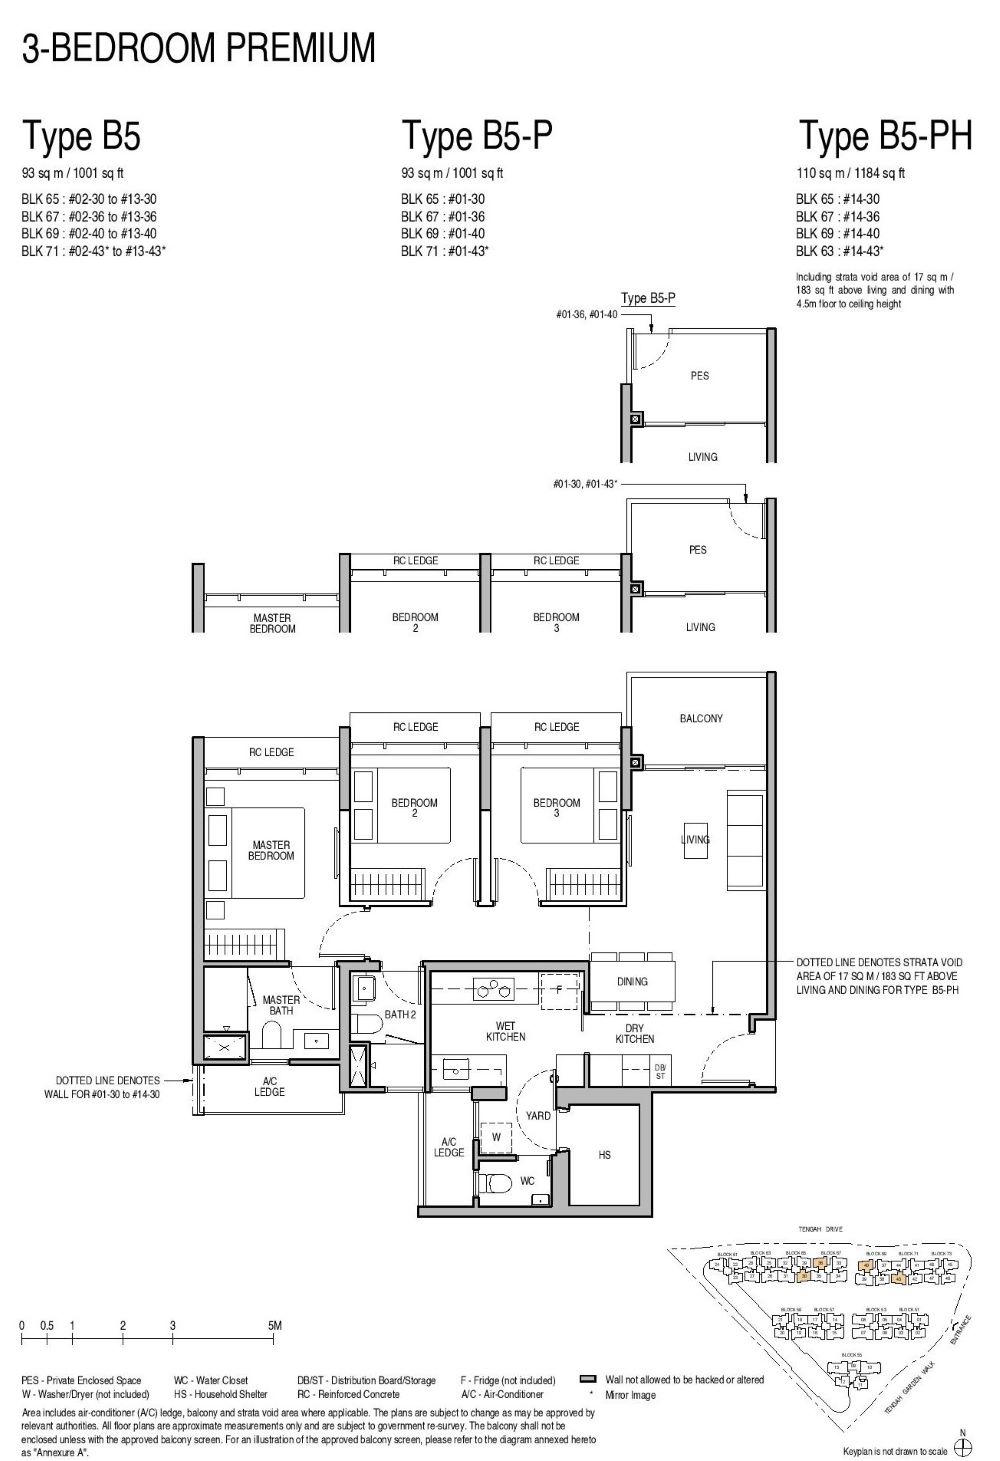 Copen Grand EC Floor Plan 3 Bedroom Premium B5 93_1001